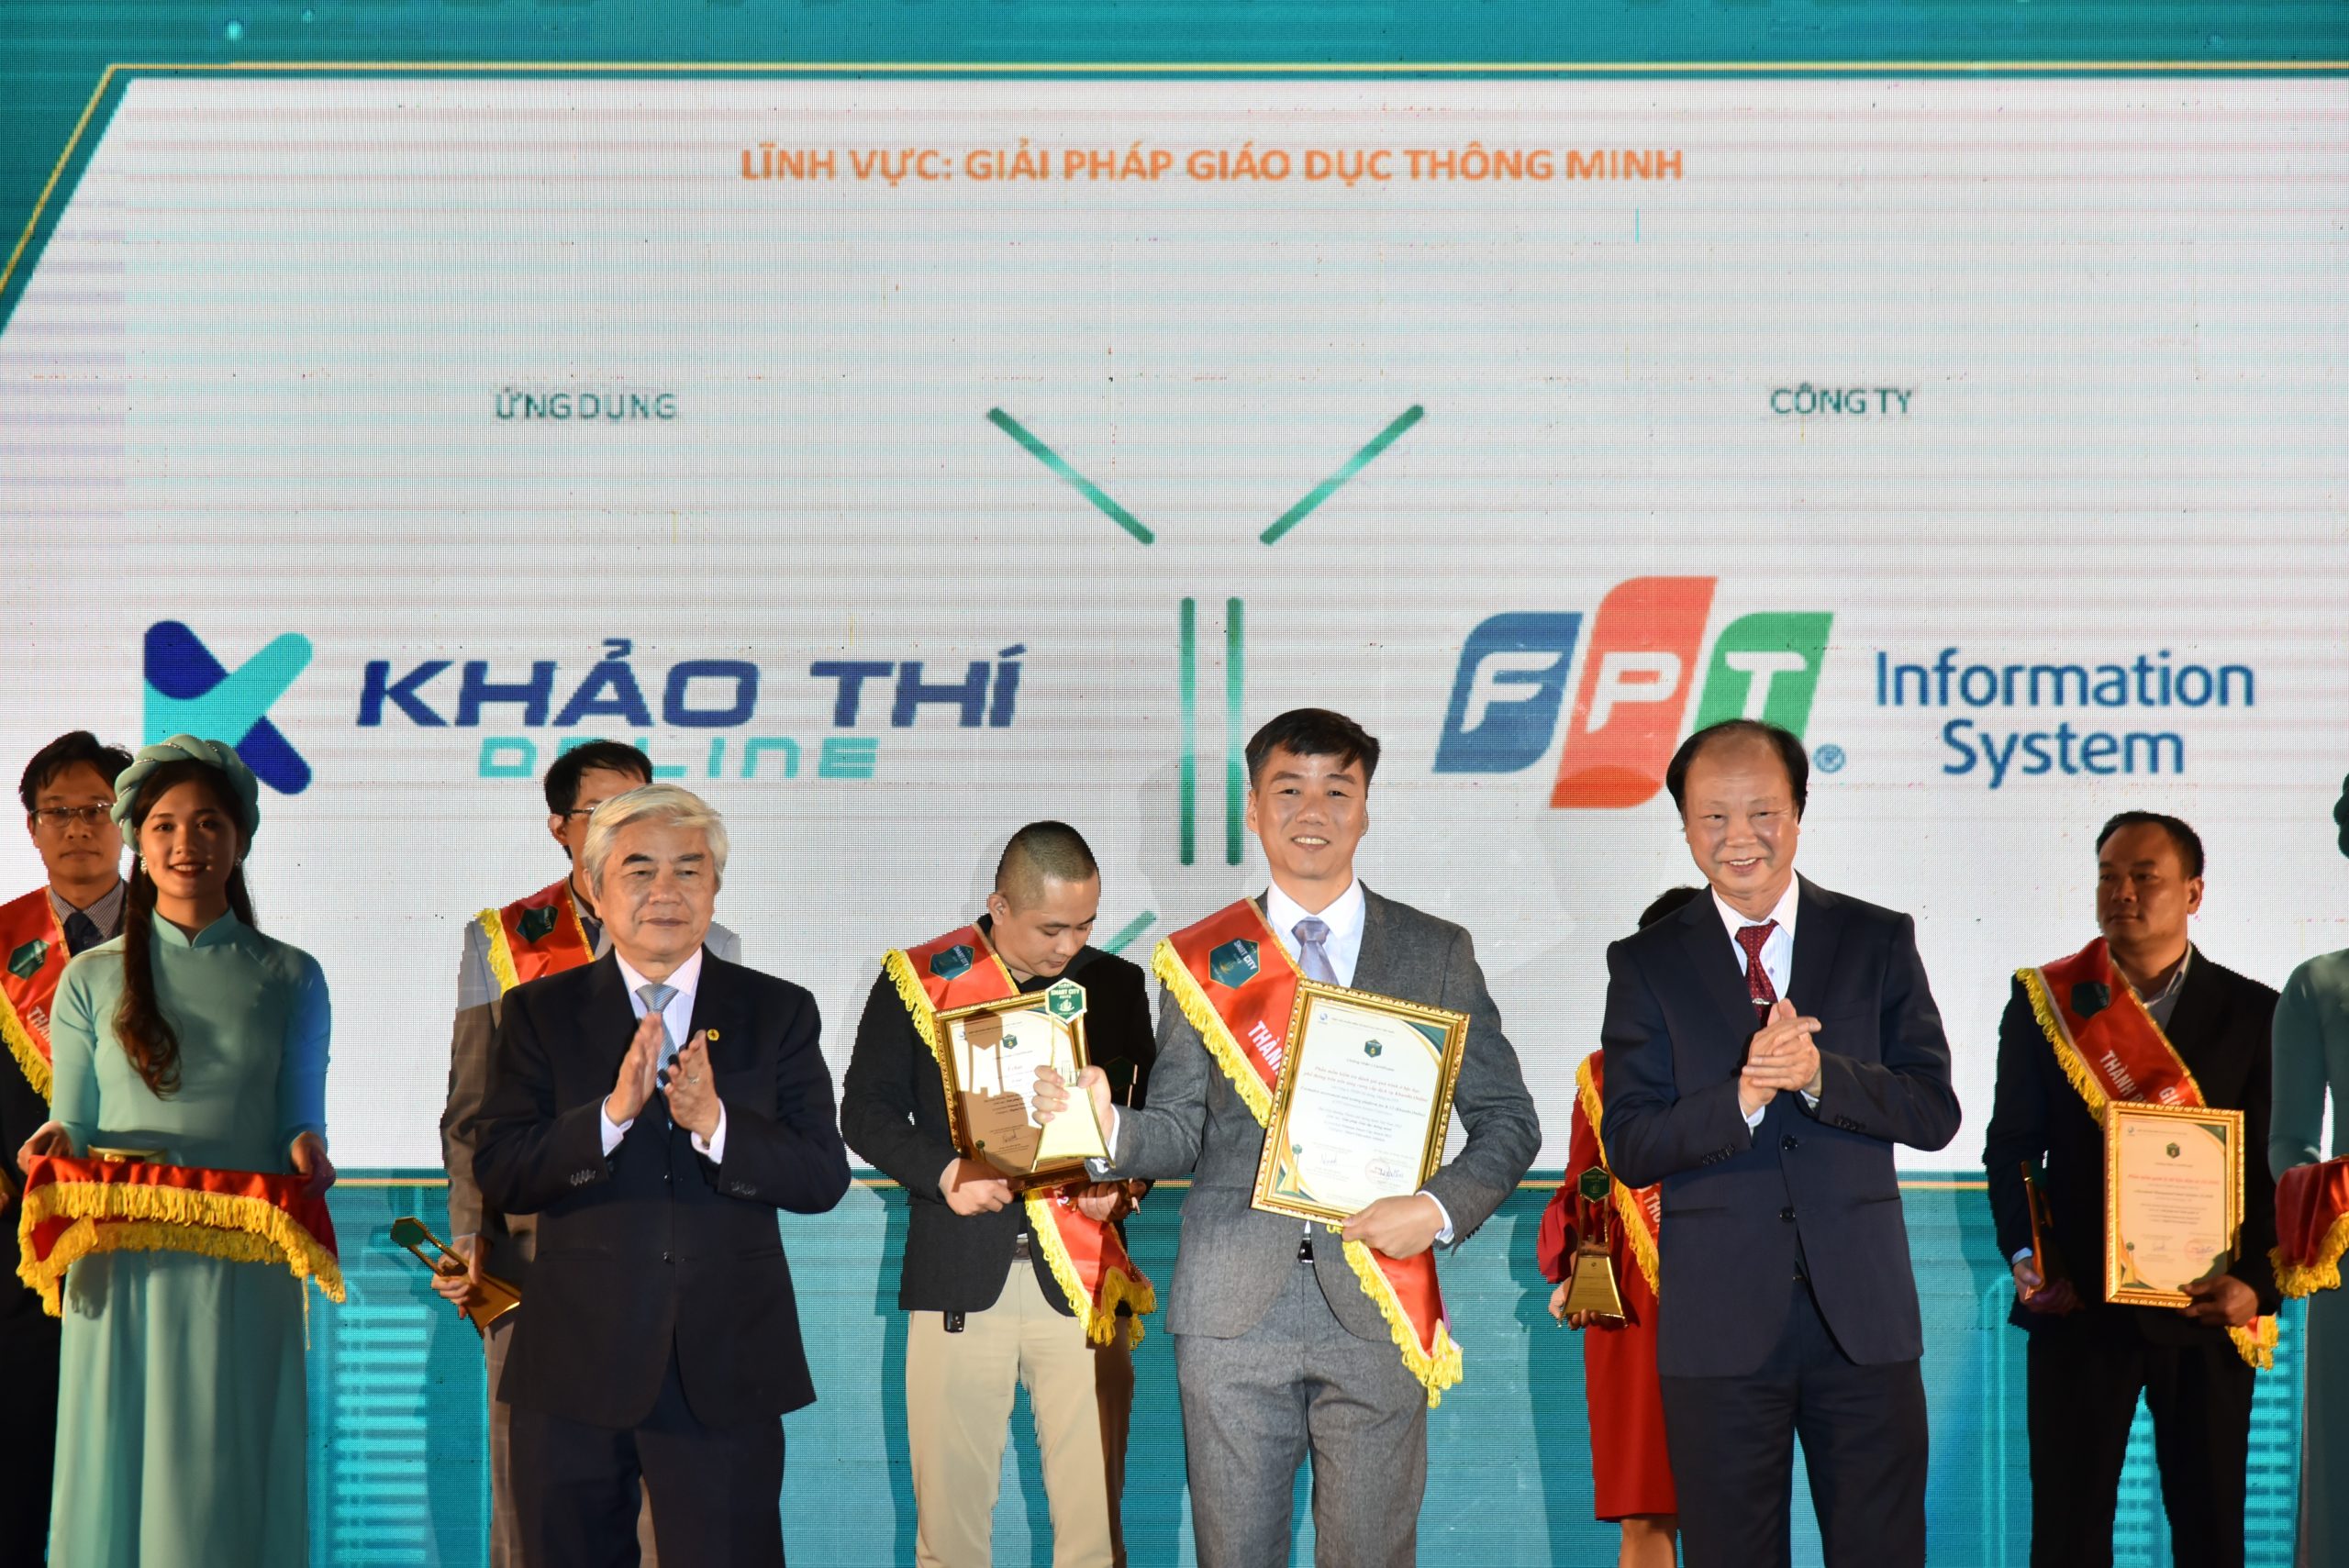 2022 Vietnam Smart City Awards – Formative assessment and testing platform for K-12 (Khaothi.Online)